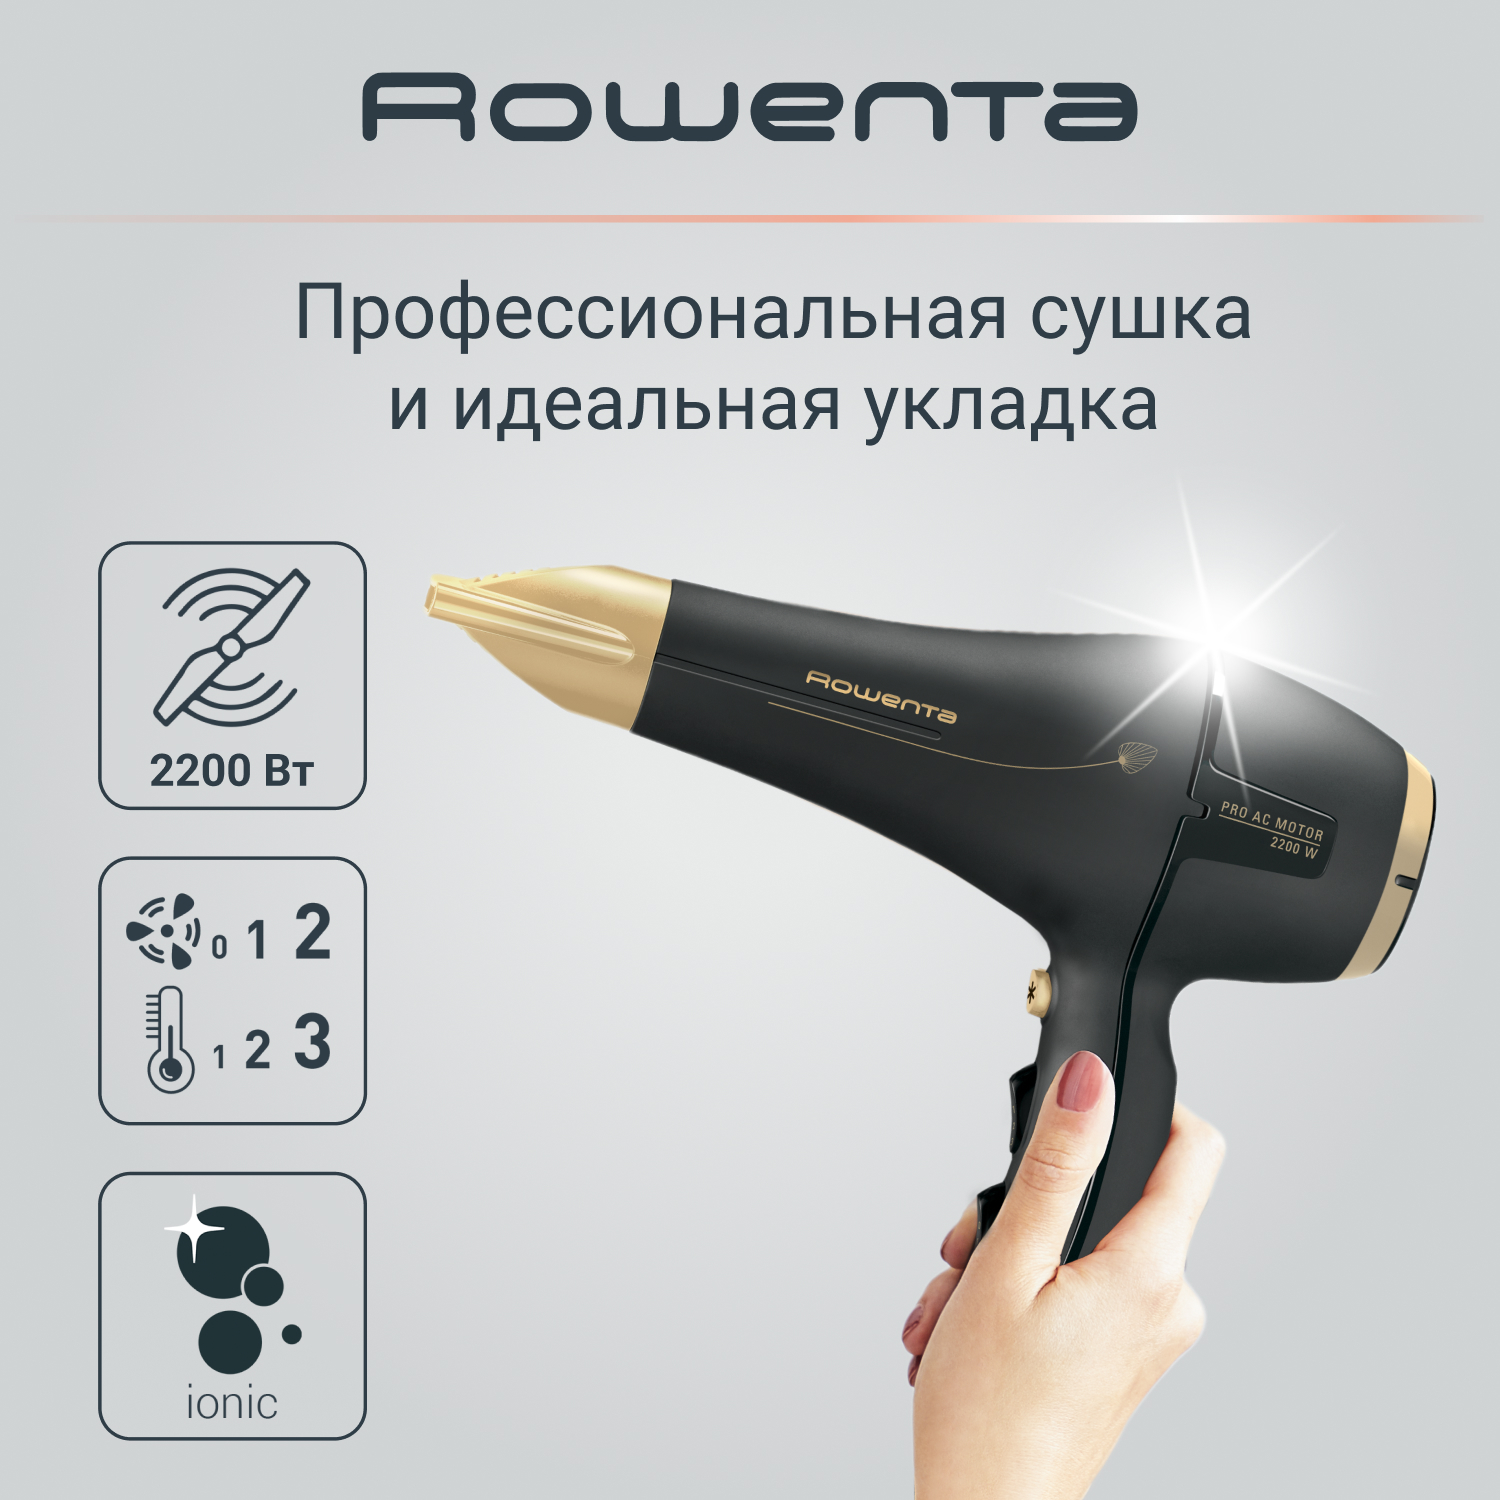 Фен Rowenta Signature Pro AC Magic Nature CV7846F0, 2200 Вт, черный/золотой logitech signature plus m750